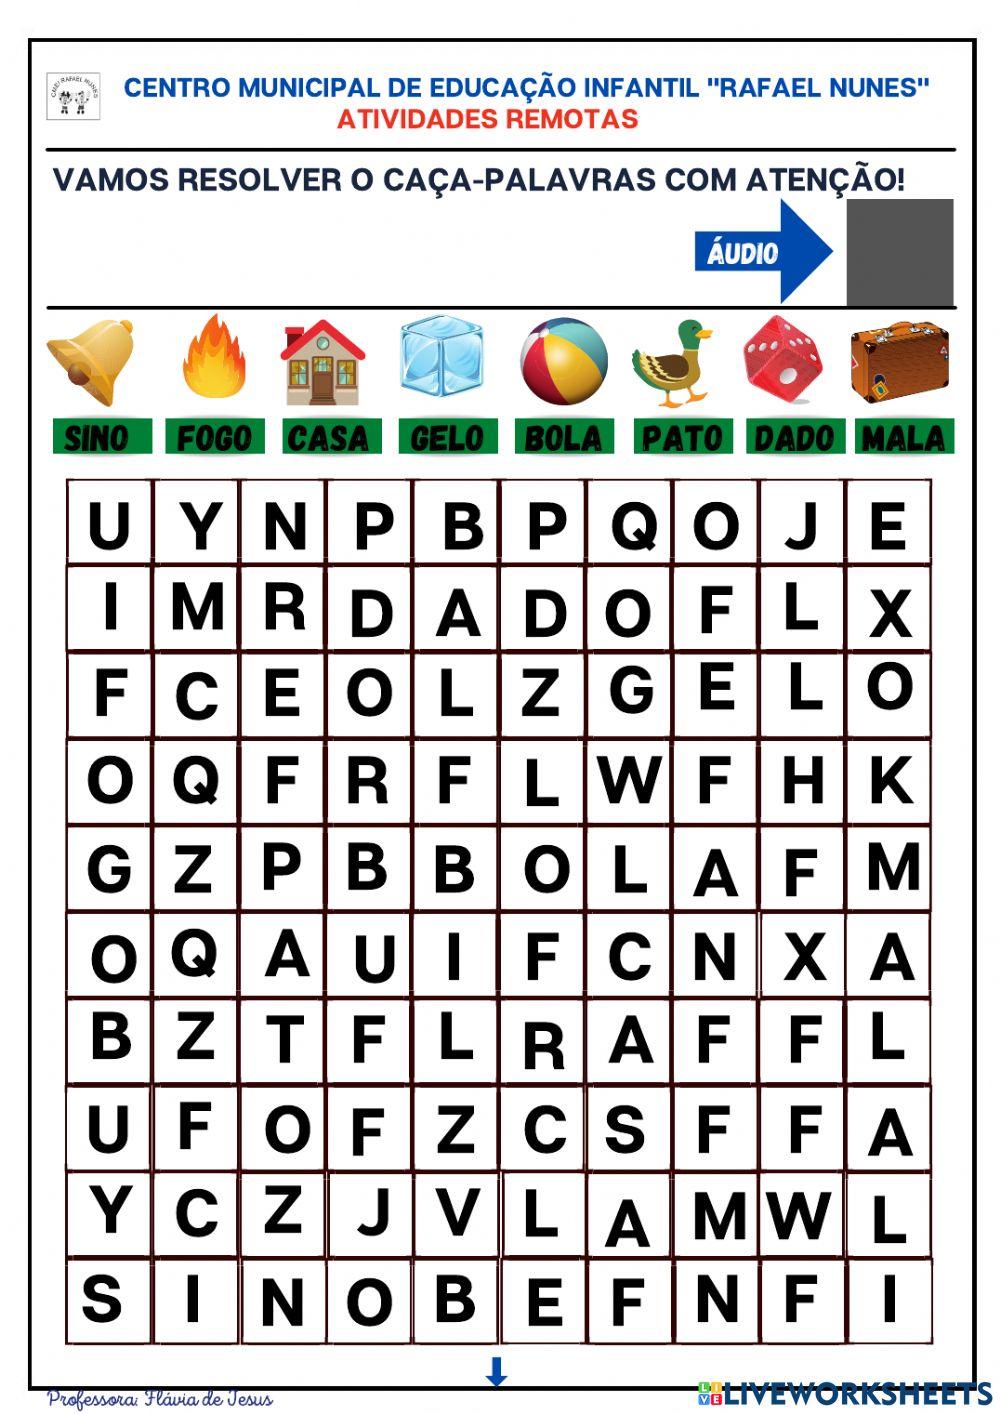 Caça-palavras interactive activity for educação infantil